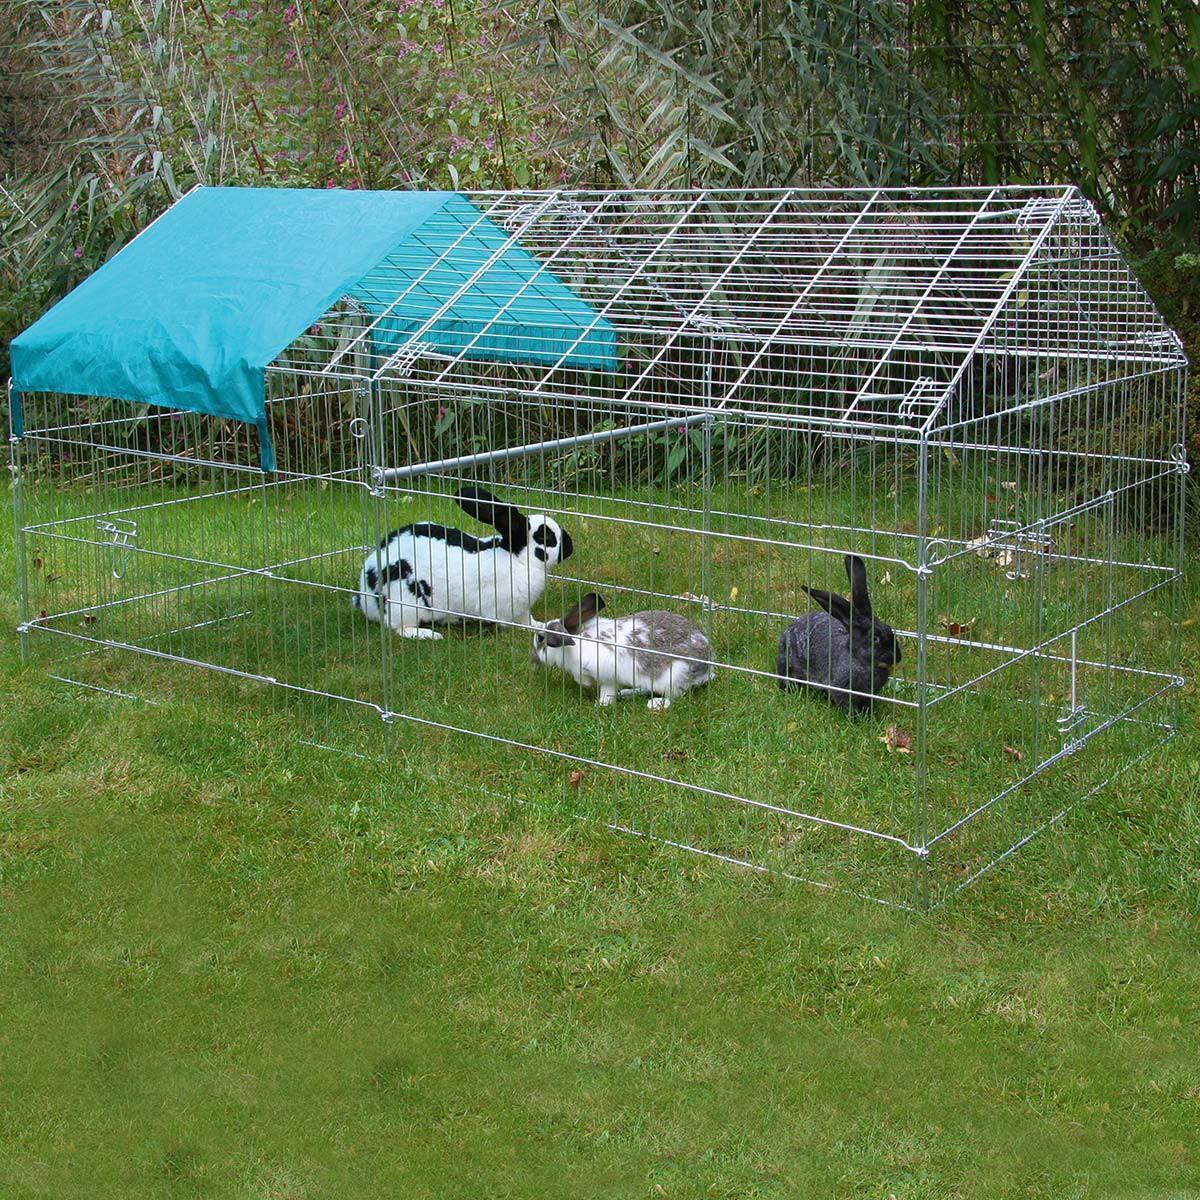 Kerbl gabbia da esterno per conigli e pollame 220 cm